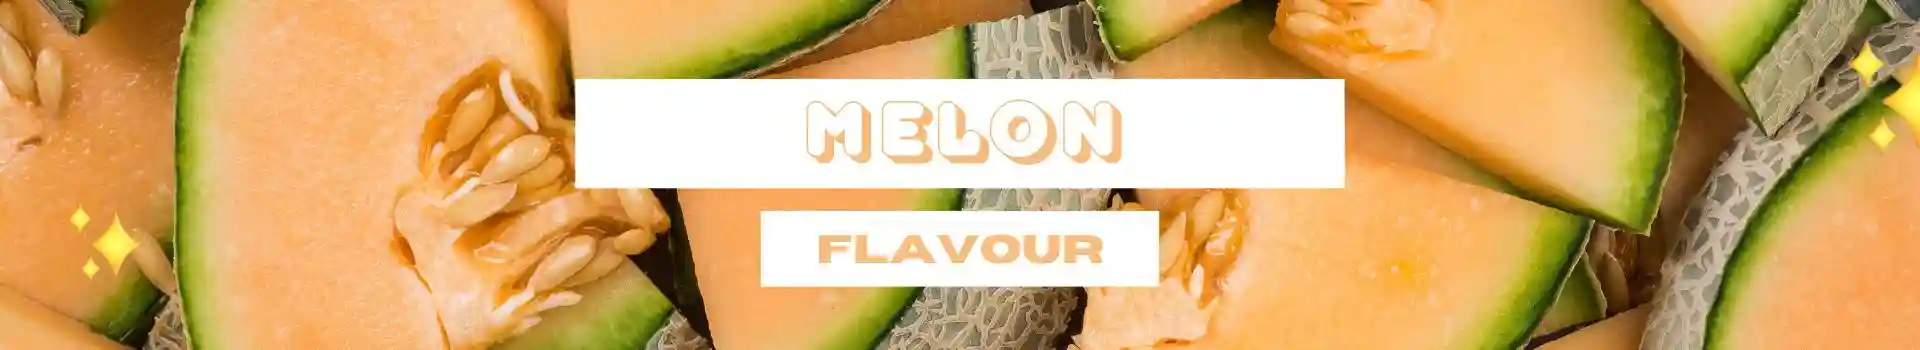 IGET Vape Flavours - Melon